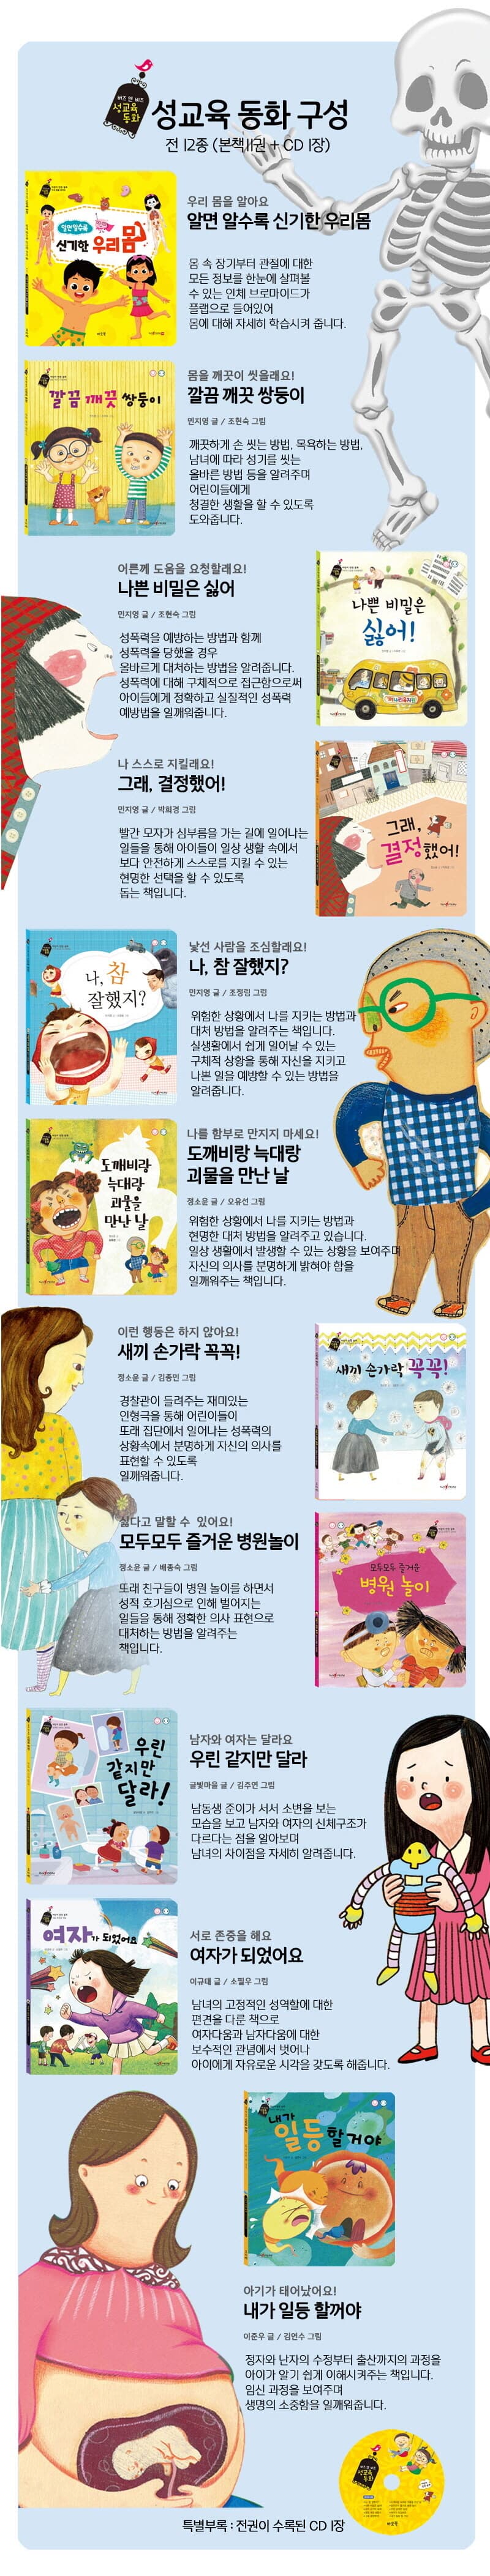 바오북-버즈앤비즈 성교육동화(전11권+CD2장)(세이펜적용가능)